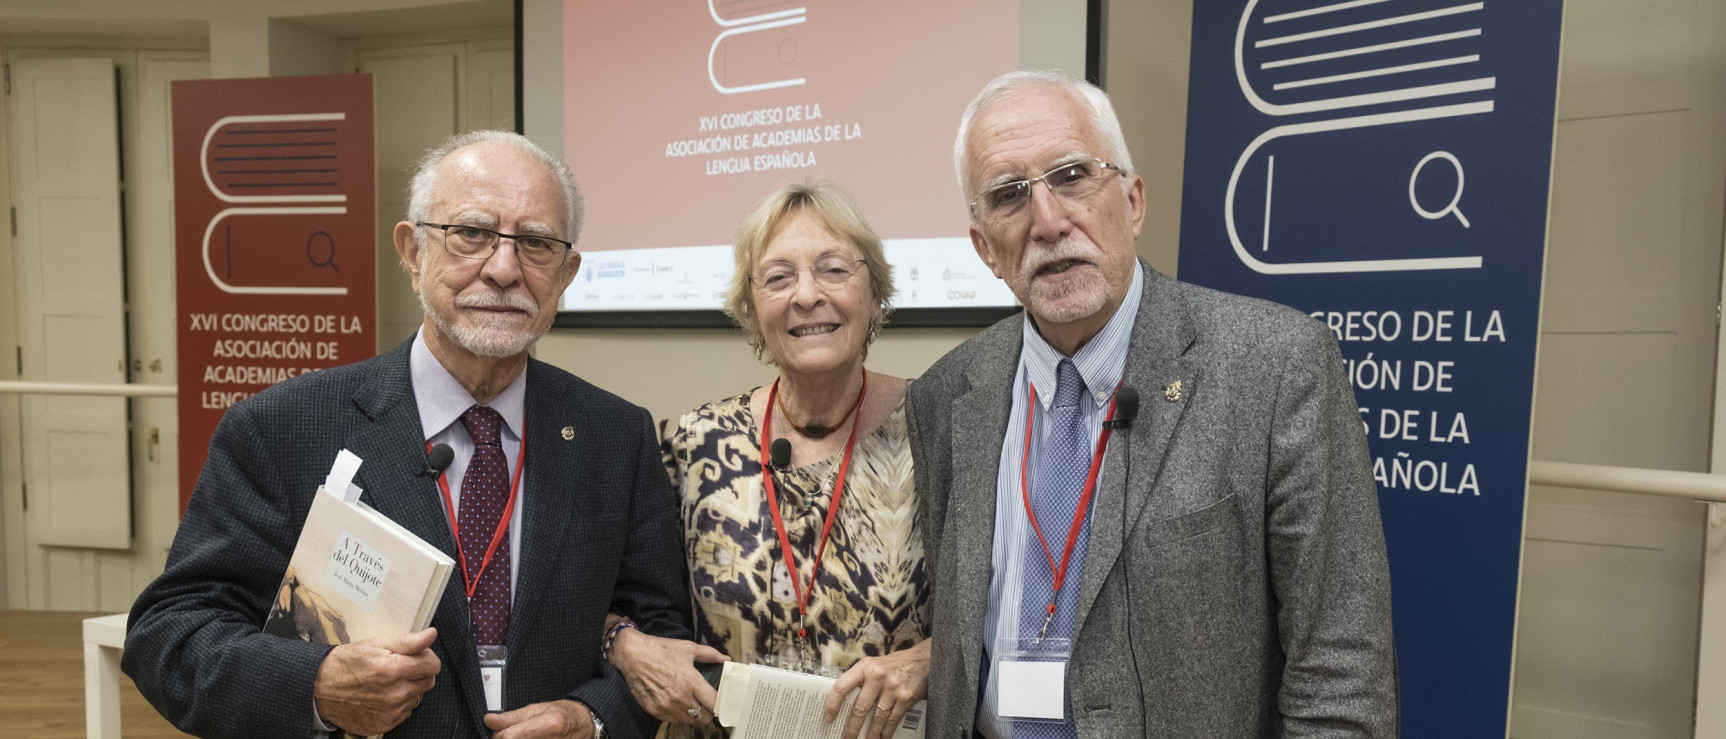 José María Merino, Soledad Puértolas y Luis Mateo Díez en el XVI Congreso de la ASALE